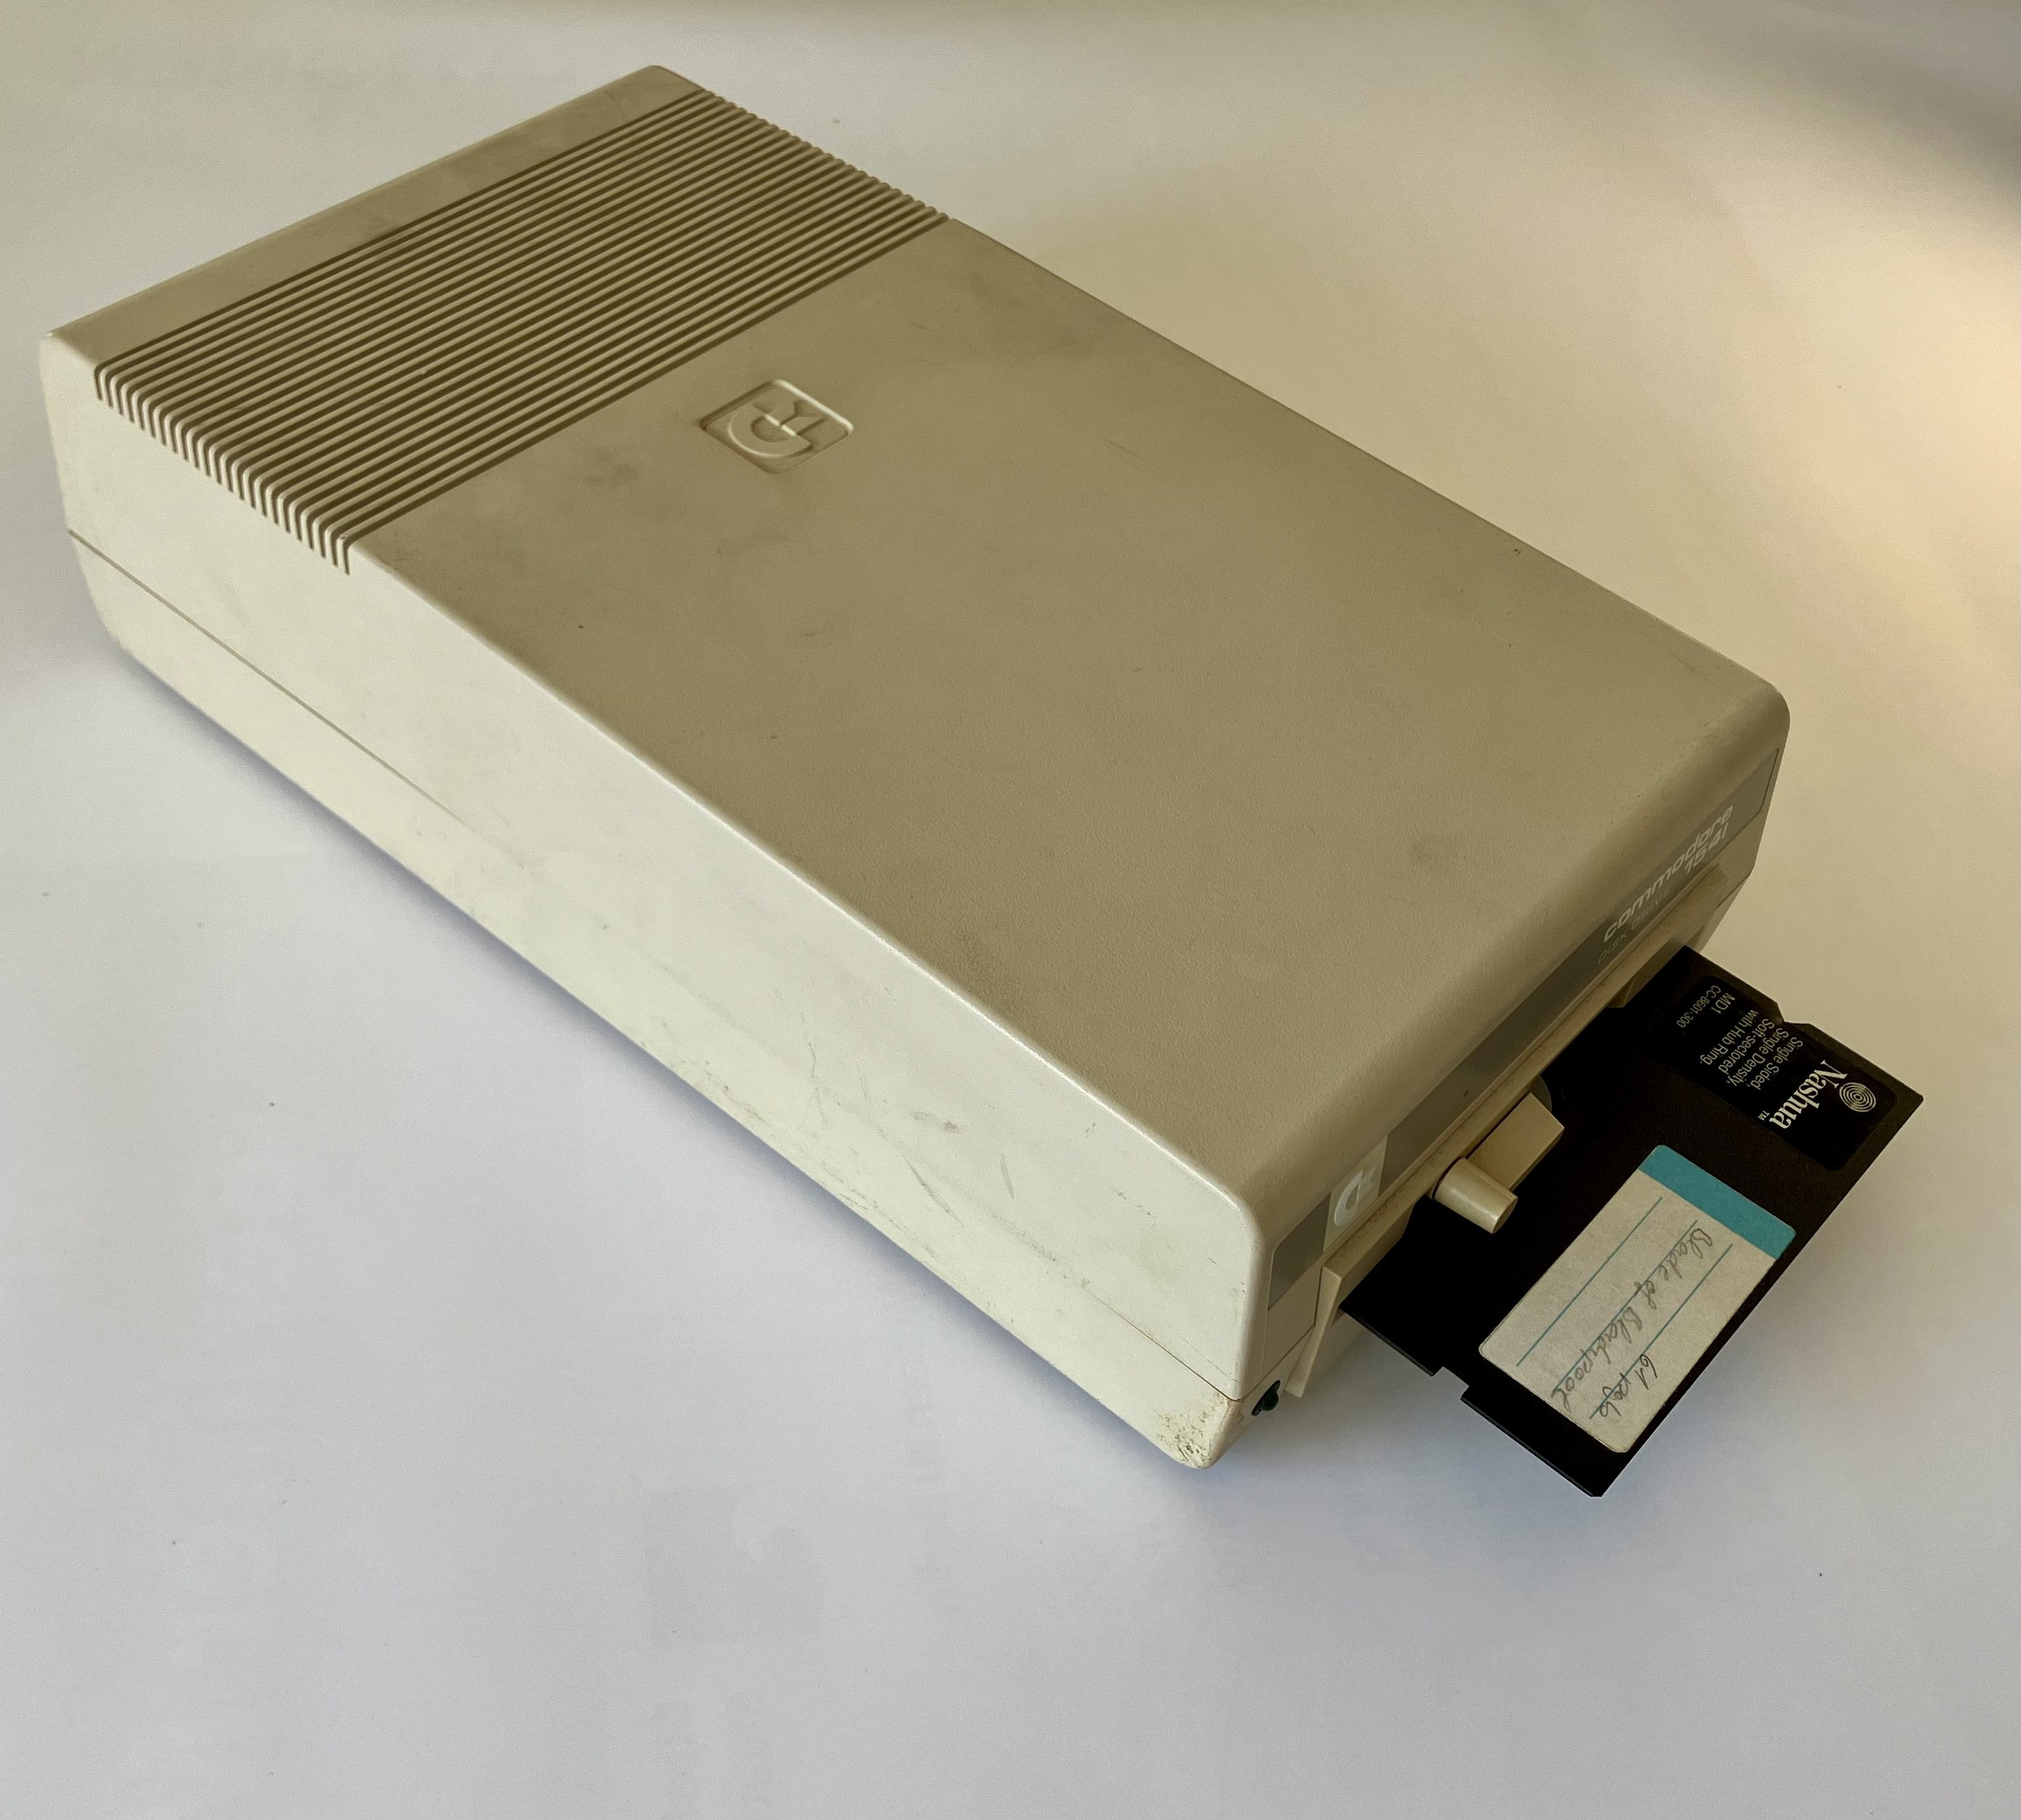 Floppy Disk Drive VC1541c (Computerhistorische Sammlung des Zuse-Institut Berlin CC0)